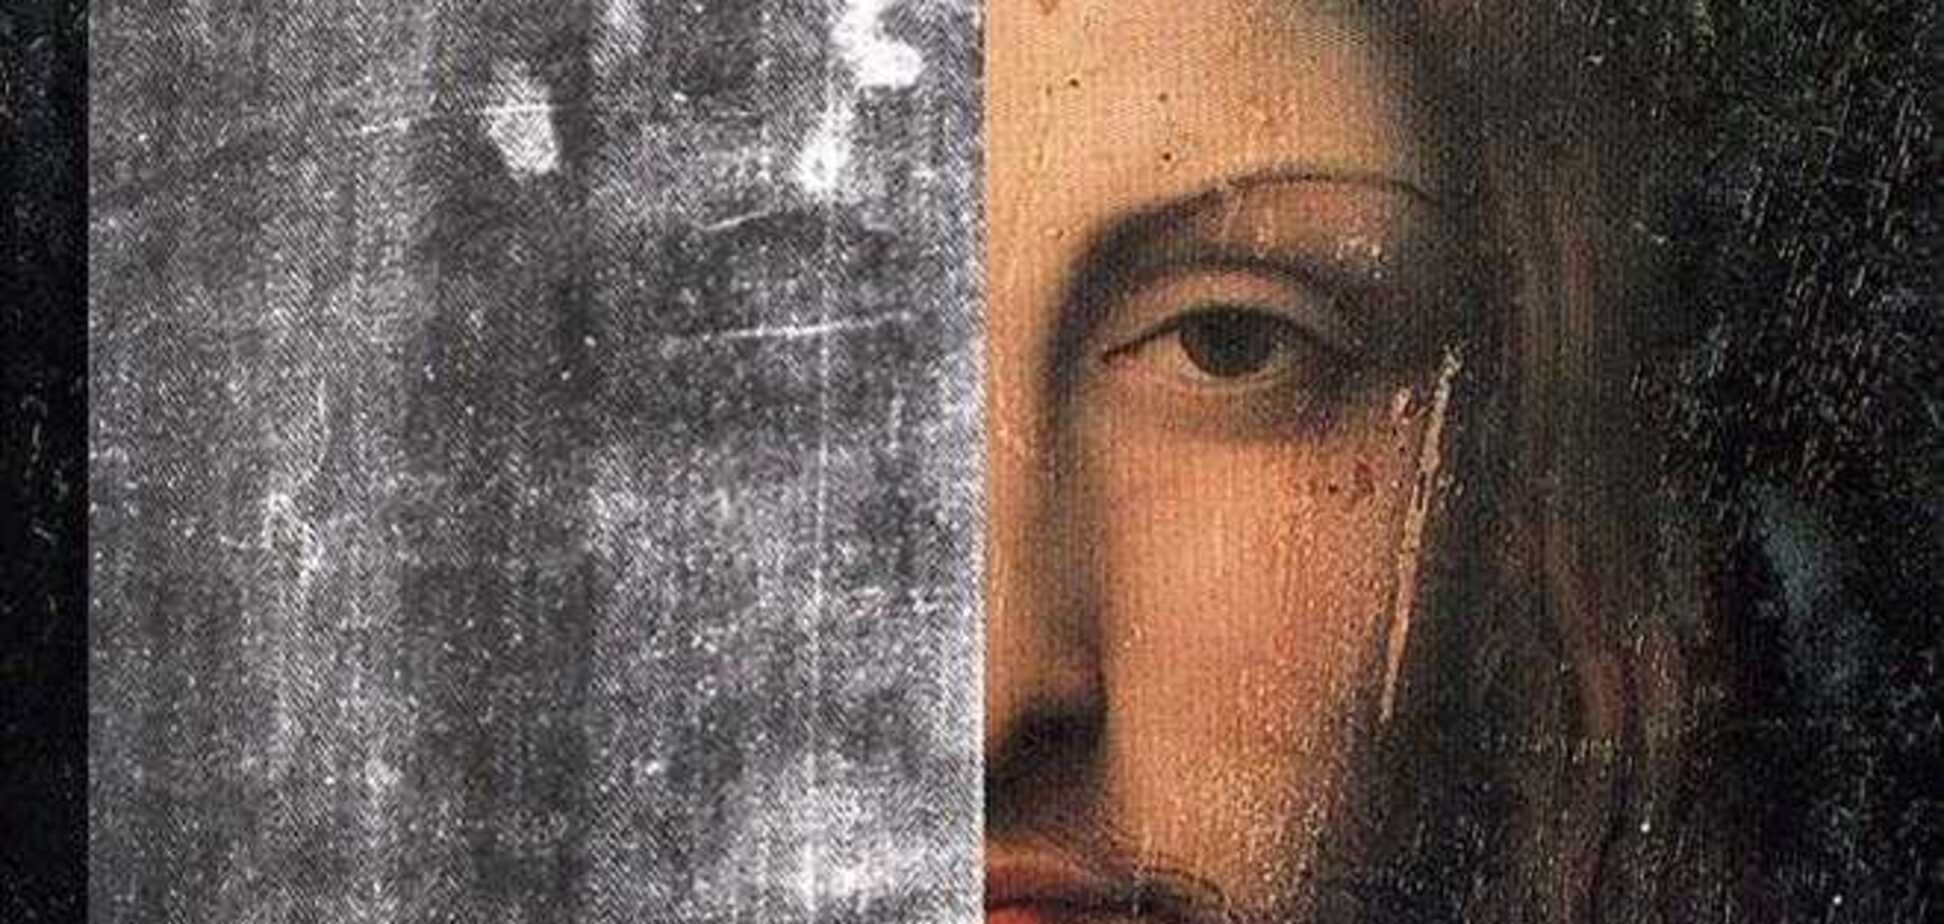 Ученые объяснили, как возник образ Христа на Туринской плащанице